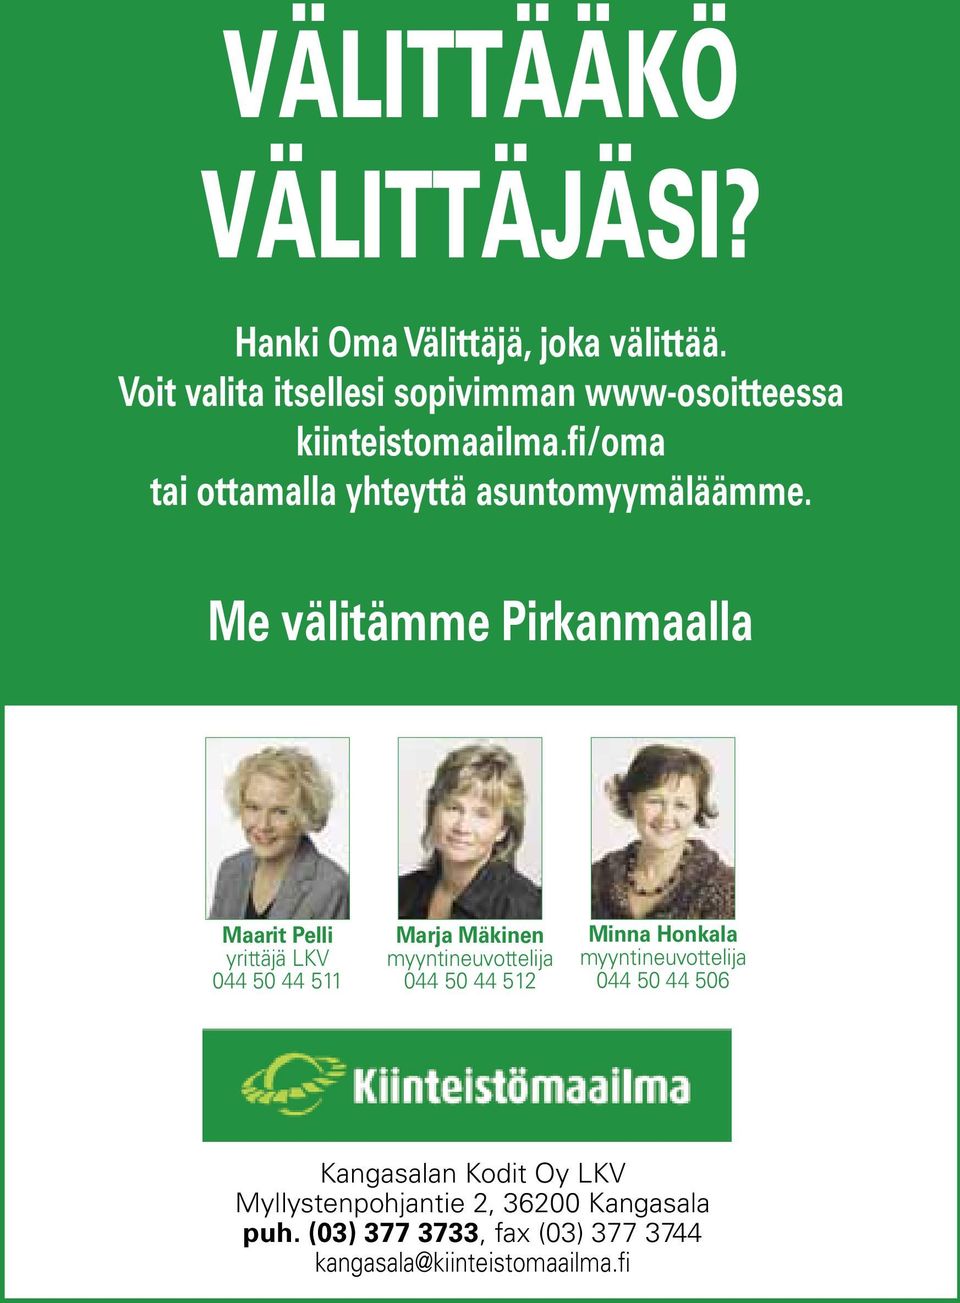 Me välitämme Pirkanmaalla Maarit Pelli yrittäjä LKV 044 50 44 511 Marja Mäkinen myyntineuvottelija 044 50 44 512